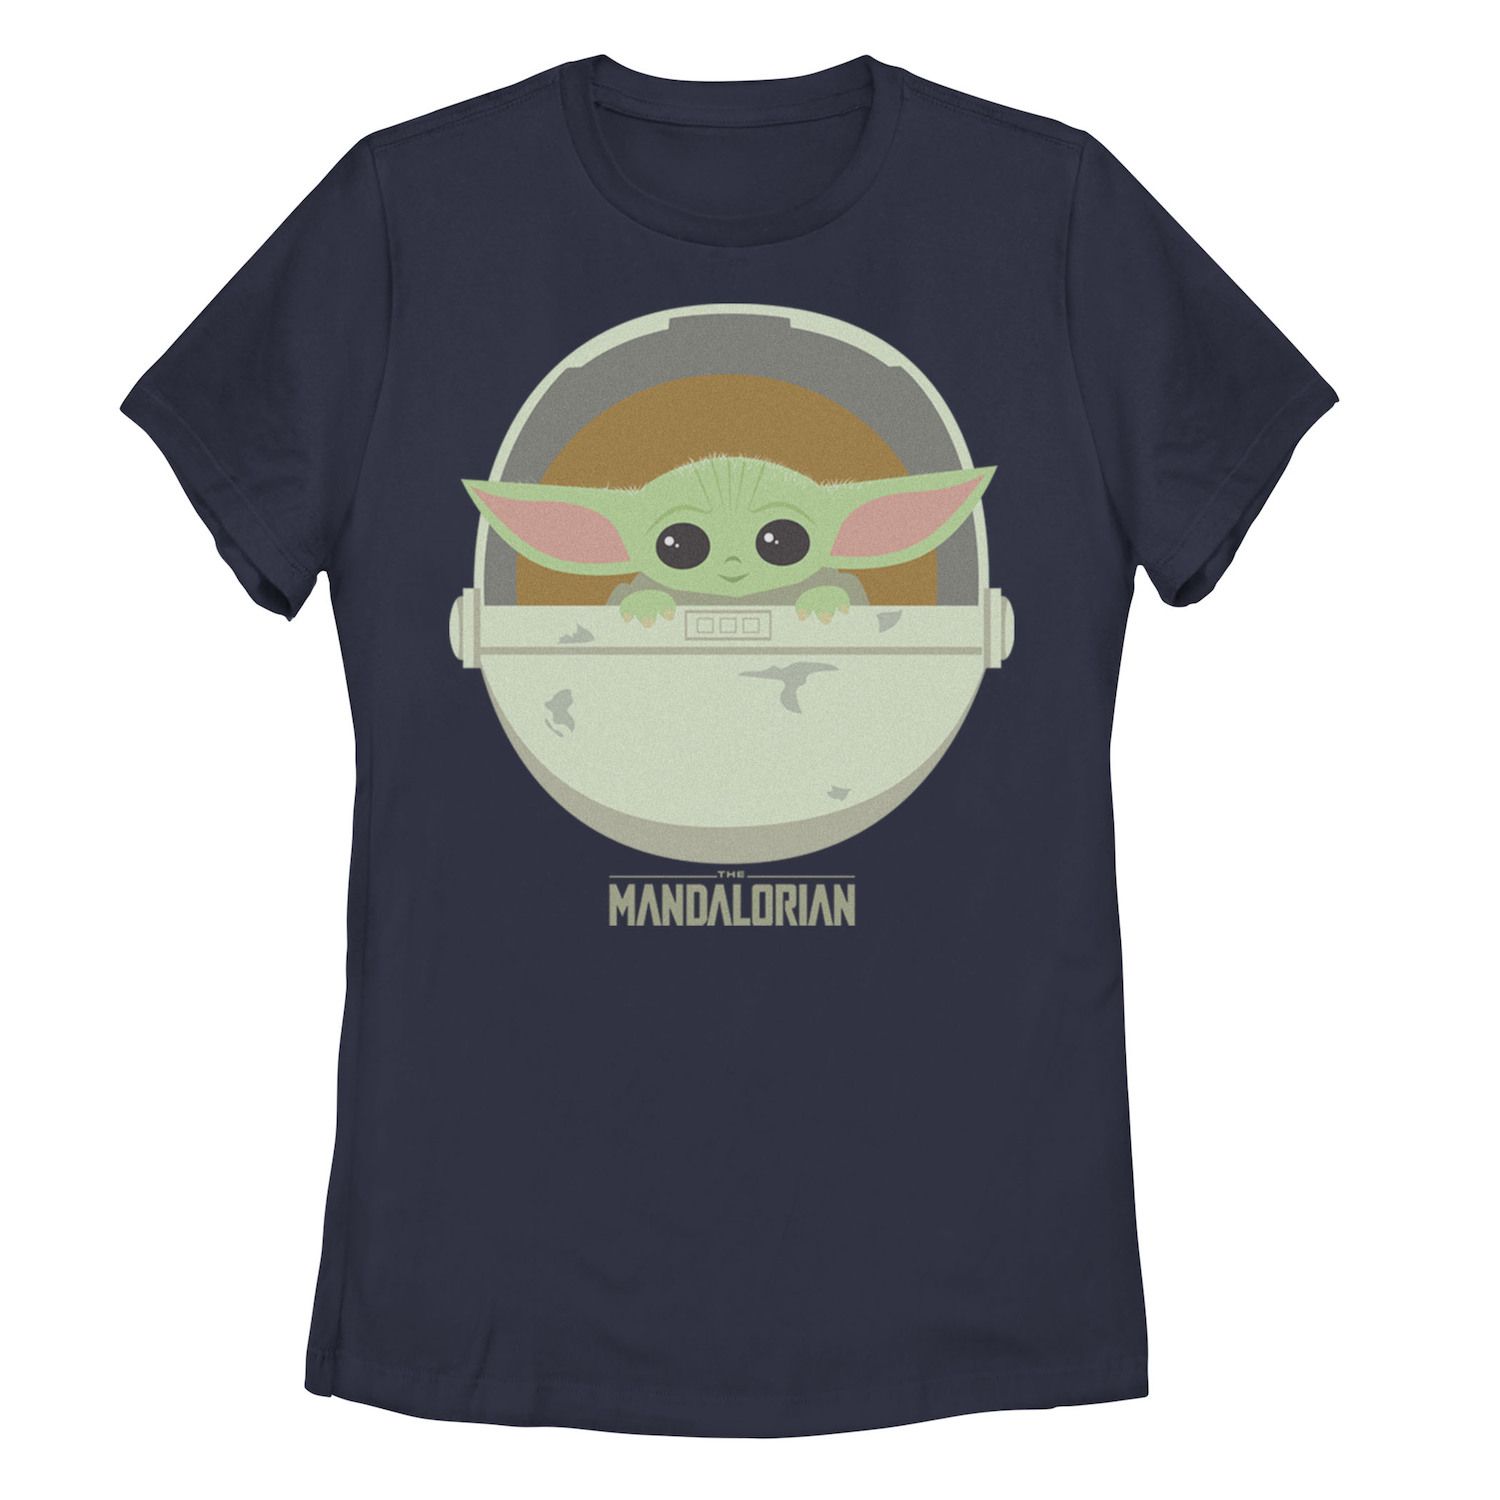 Детская футболка с рисунком «Звездные войны: Мандалорец» и детская люлька Licensed Character